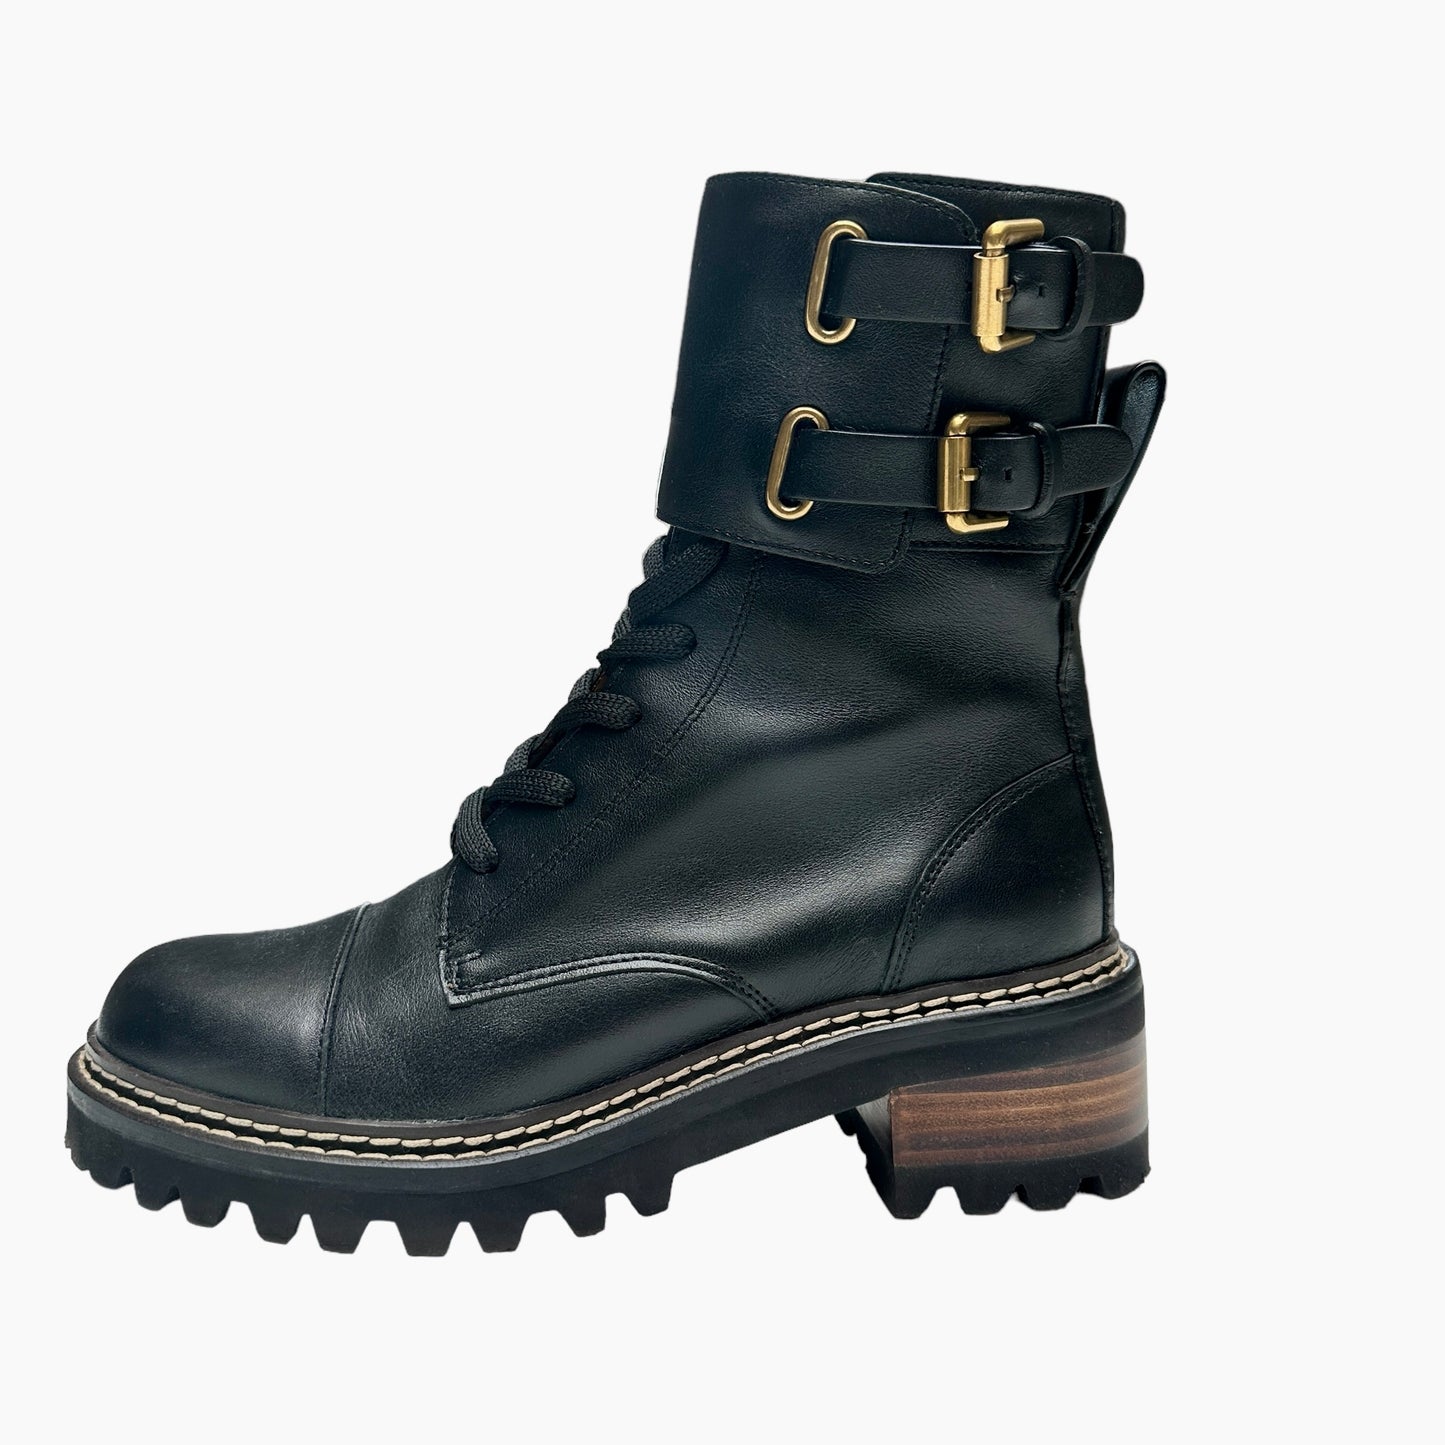 Black Combat Boot - 5.5